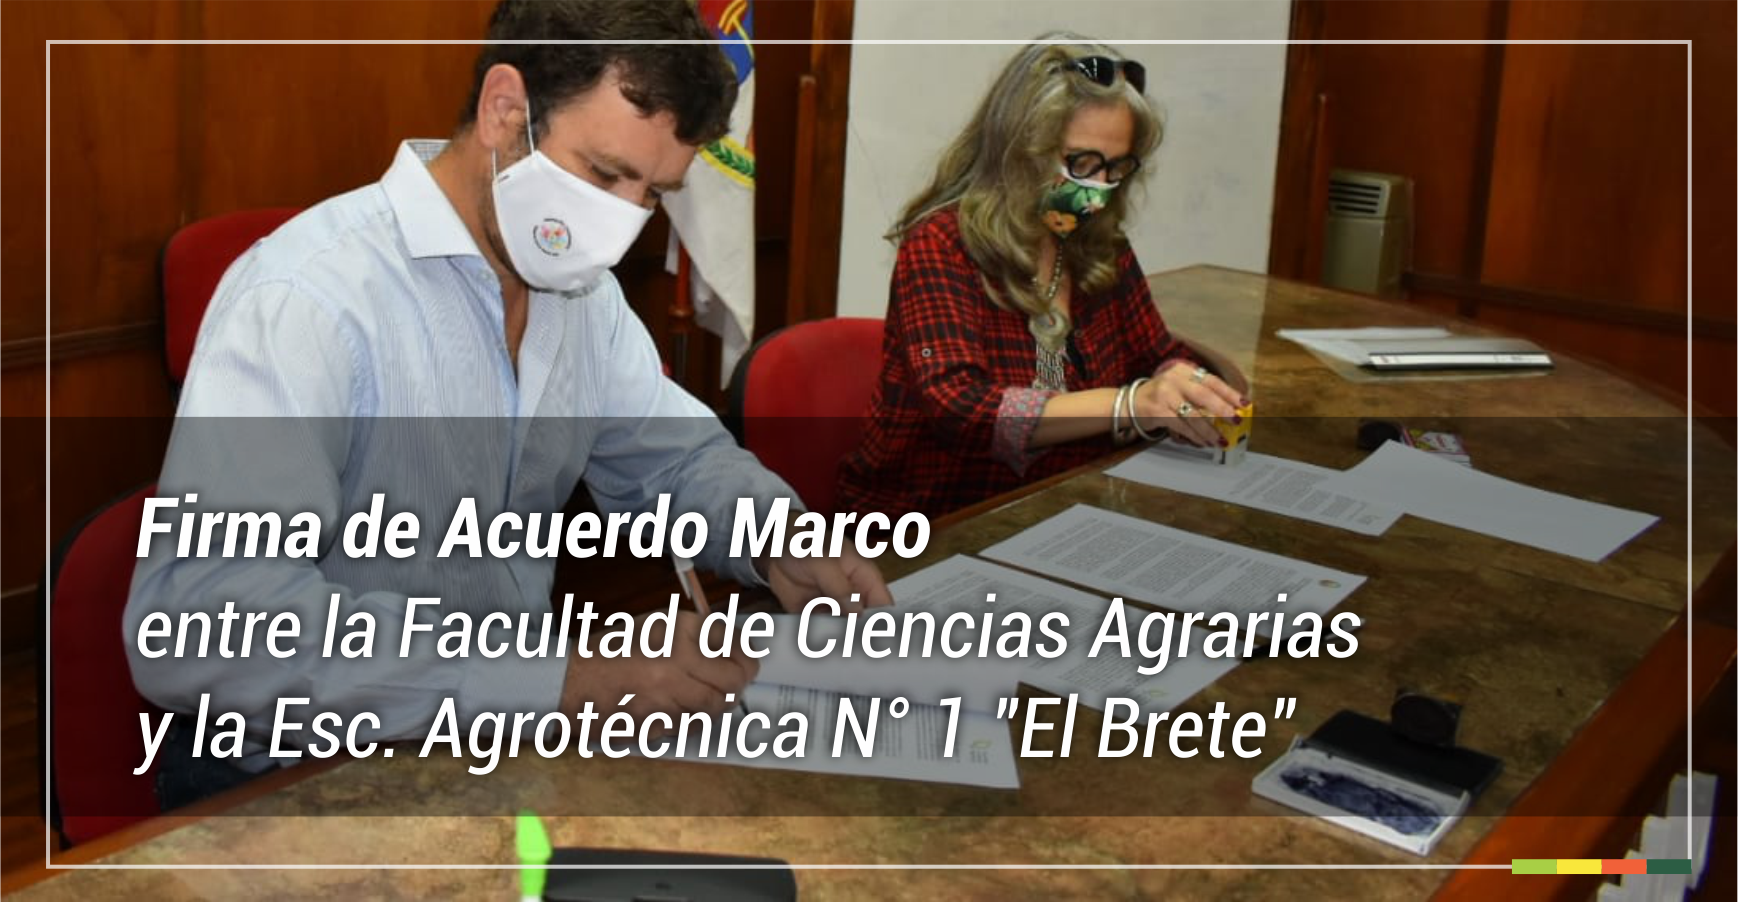 Firma de acuerdo marco entre la Facultad de Ciencias Agrarias y la Esc. Agrotécnica N° 1 "El Brete"